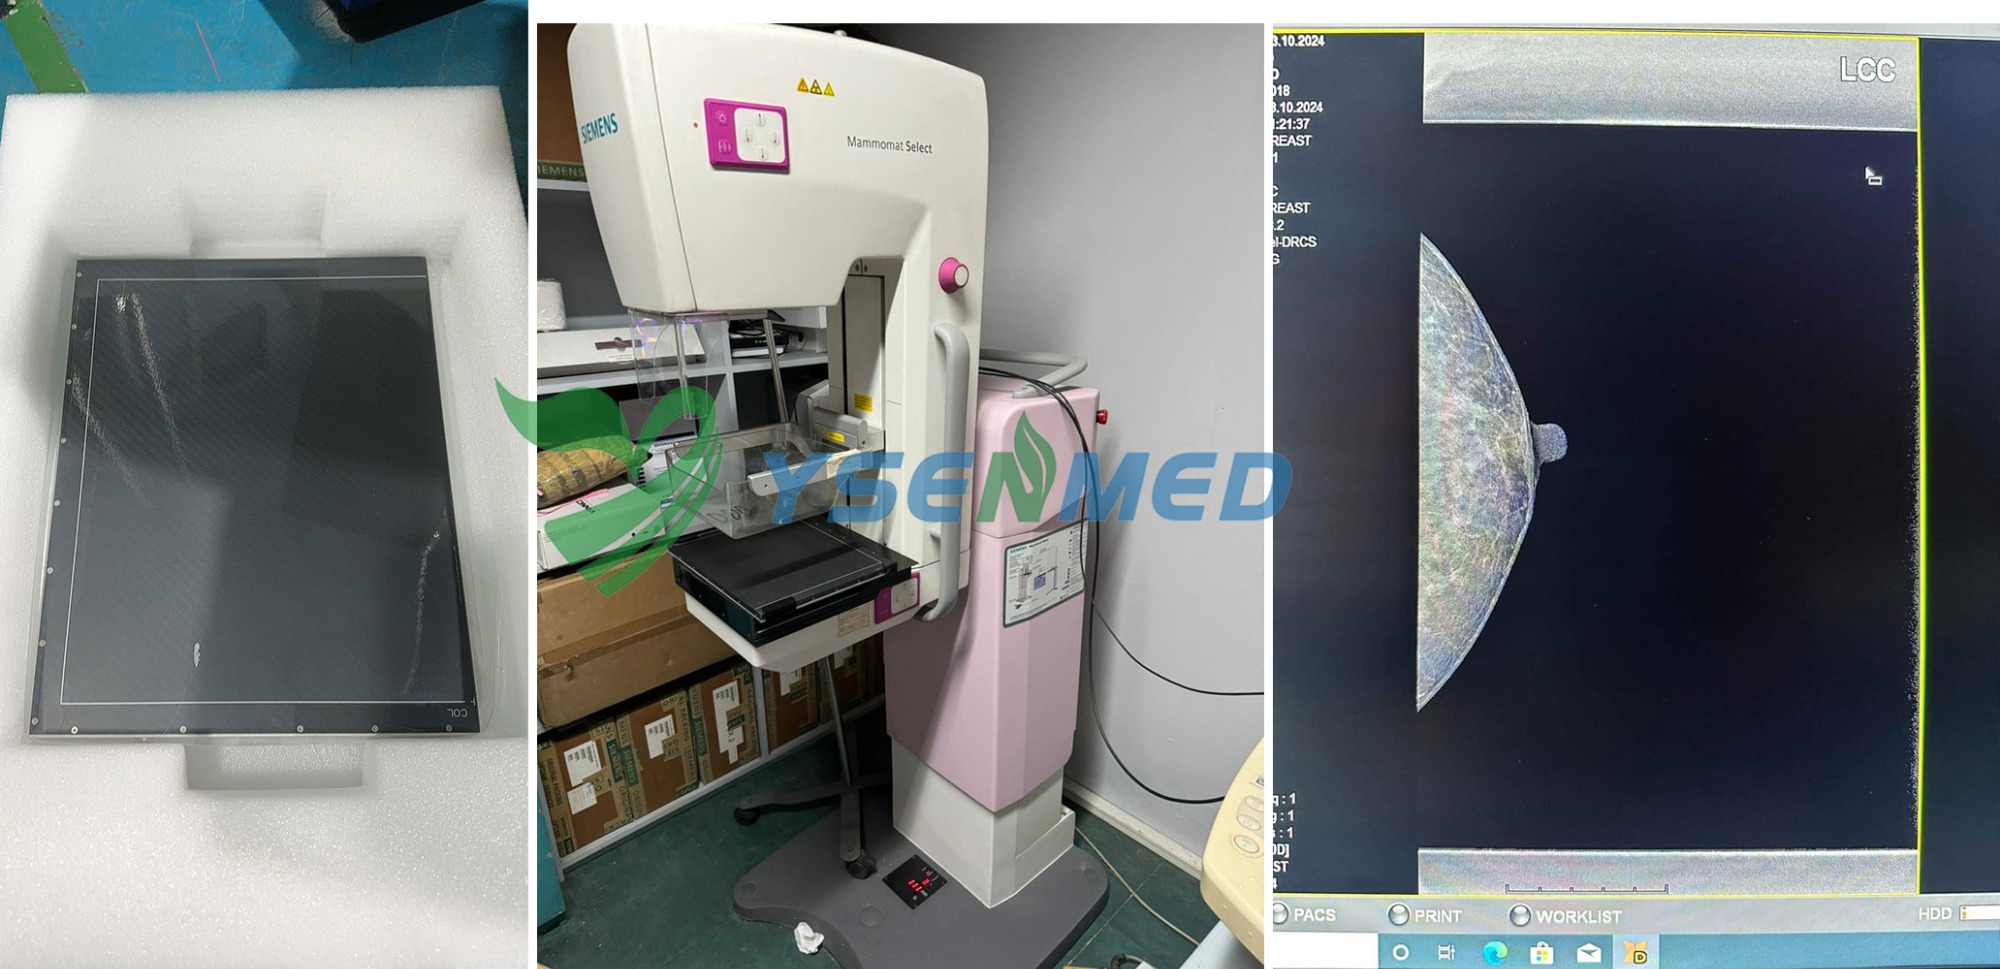 Qualité d'image du détecteur de mammouth YSFPD-R1012C hautement reconnue par un médecin philippin